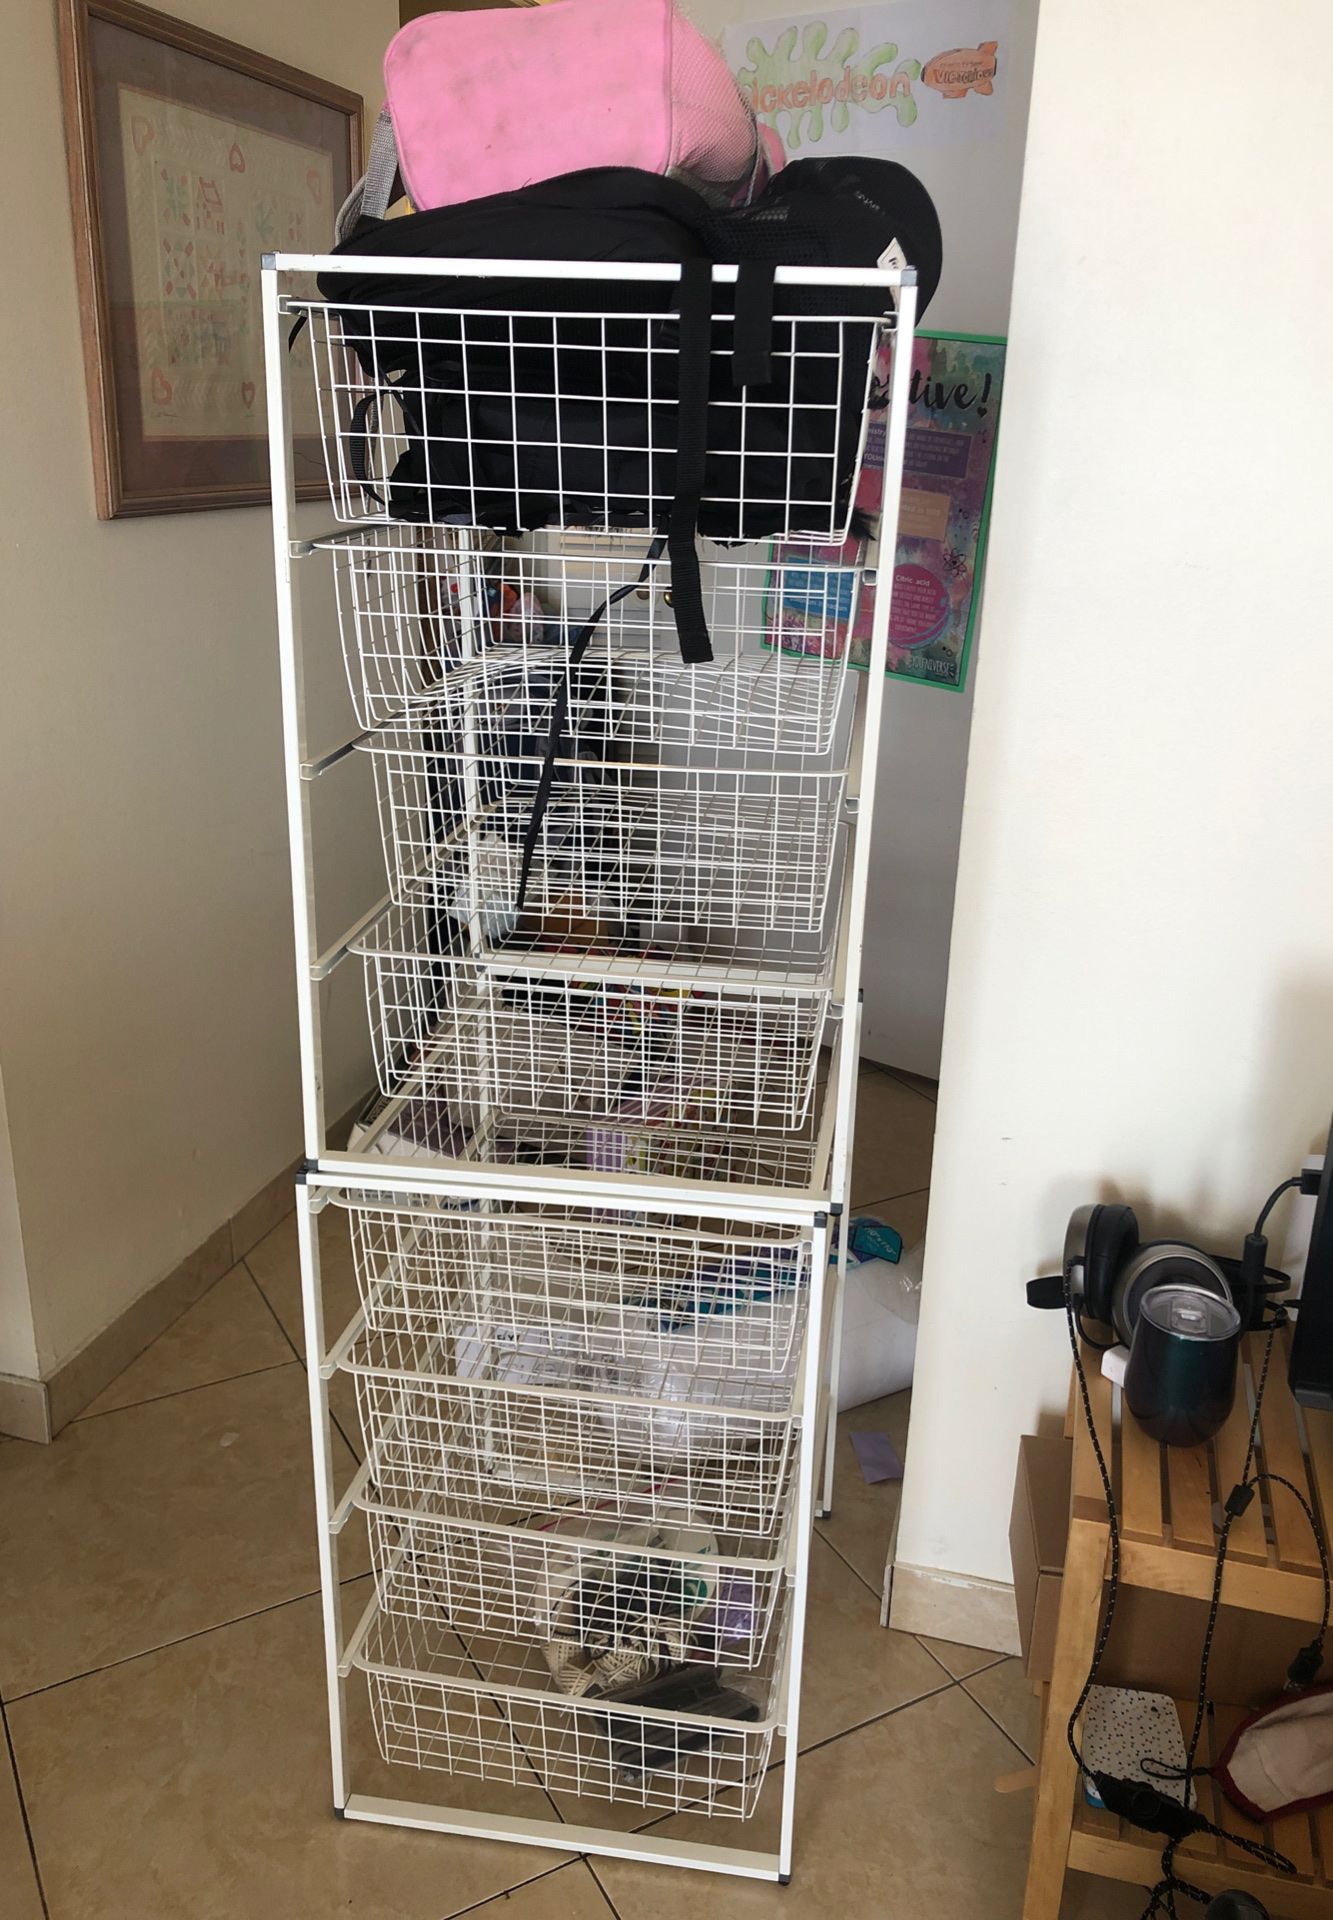 Storage closet organizer wire baskets